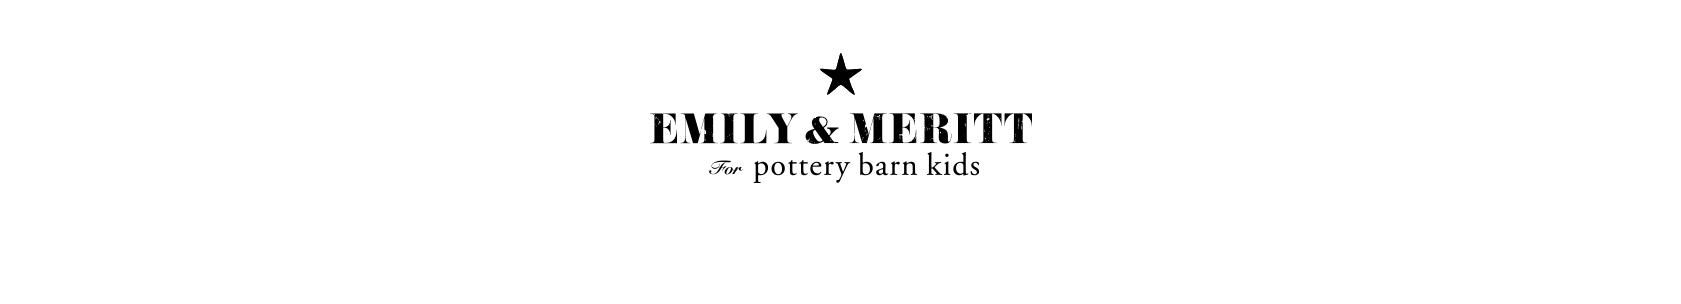 Emily & Meritt for Pottery Barn Kids